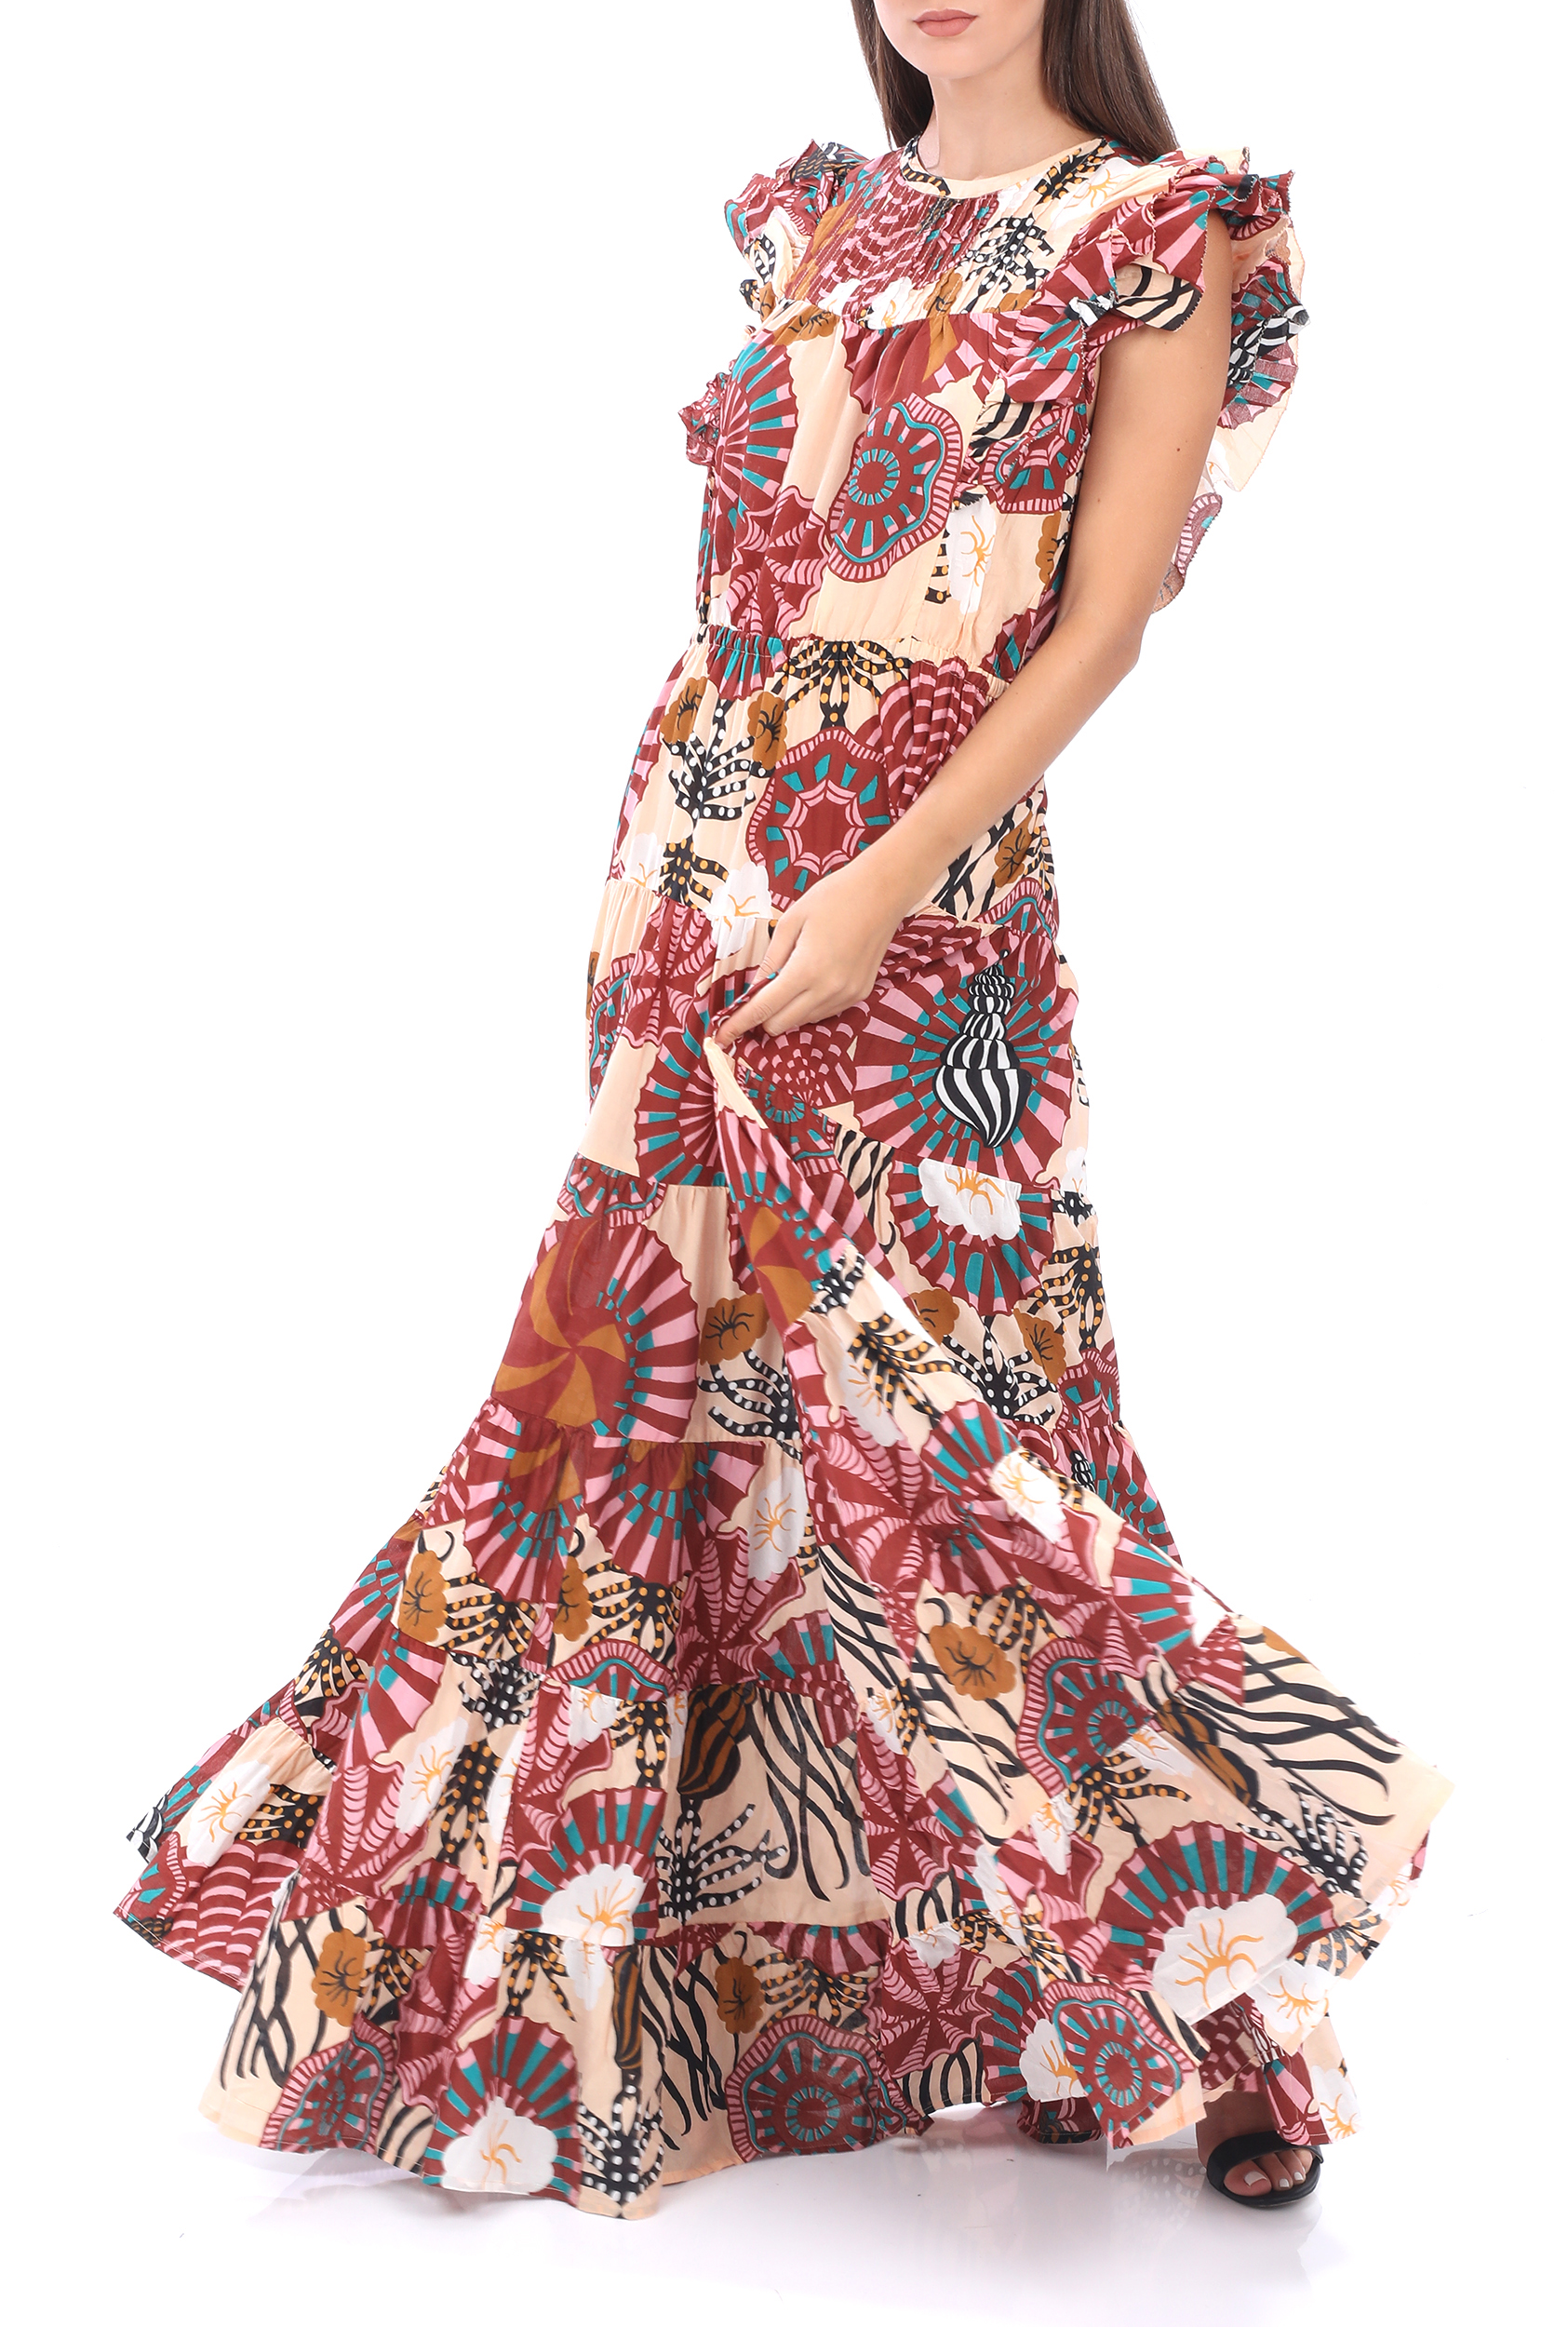 SCOTCH & SODA – Γυναικειο maxi φορεμα SCOTCH & SODA Summer dress in print ροζ κοκκινο